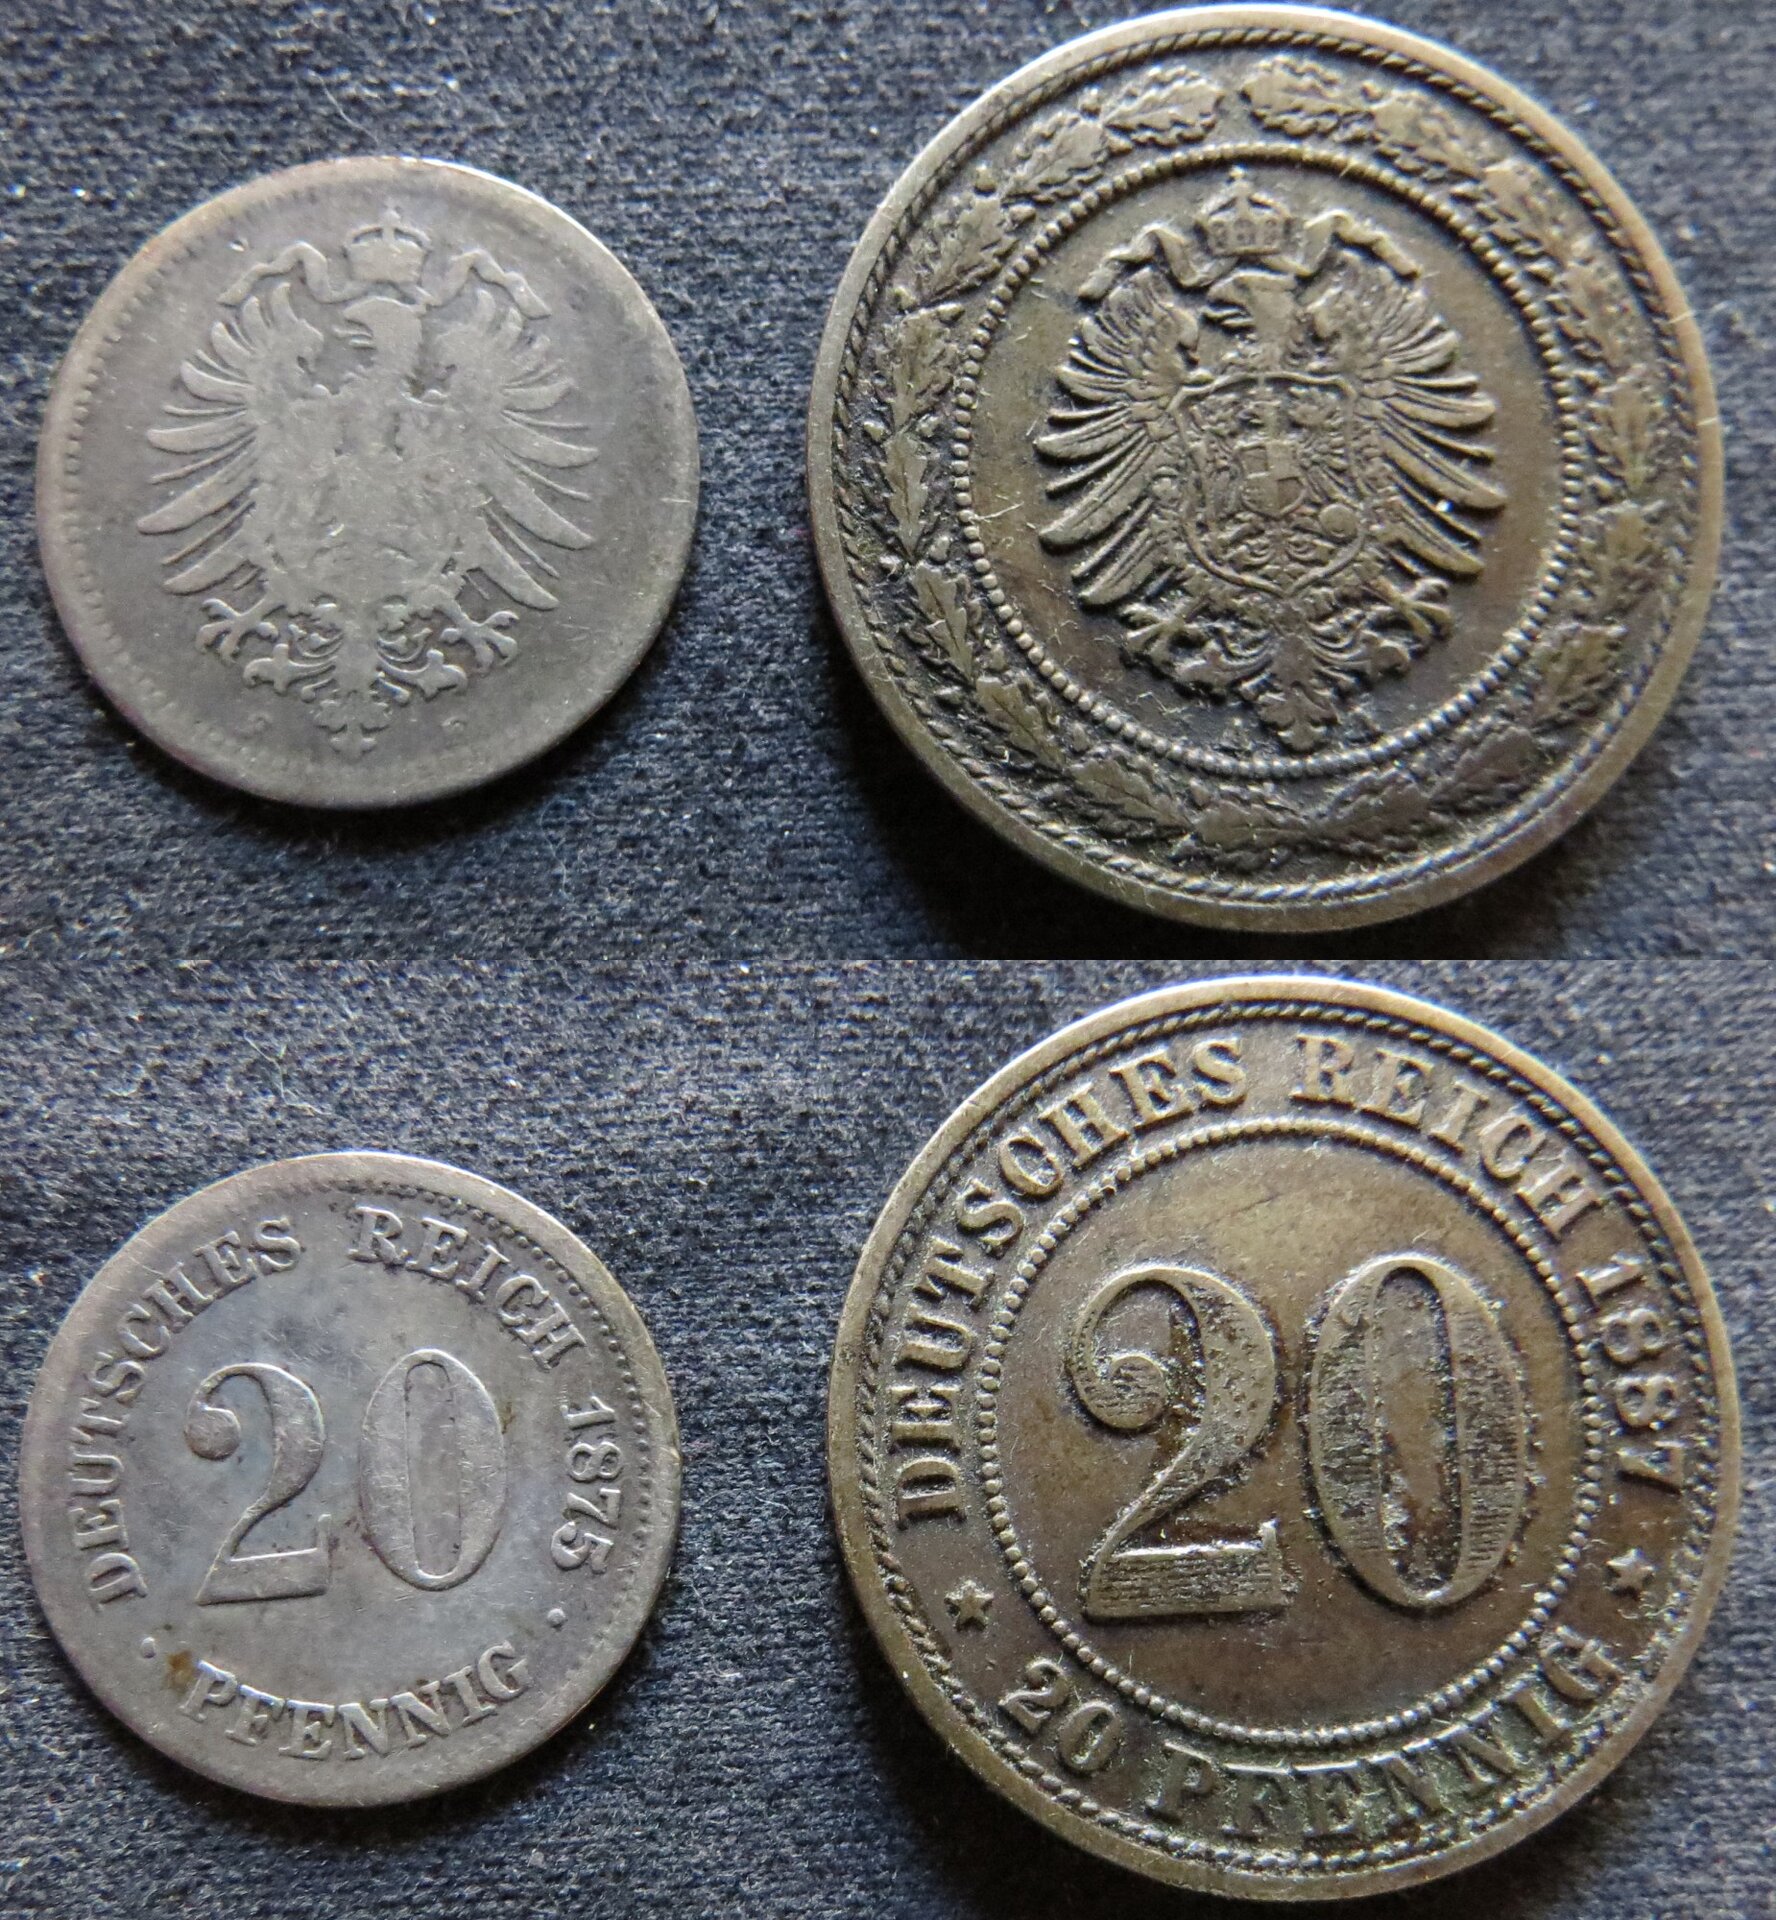 Germany 20 Pfennig 1875 and 1887.jpg